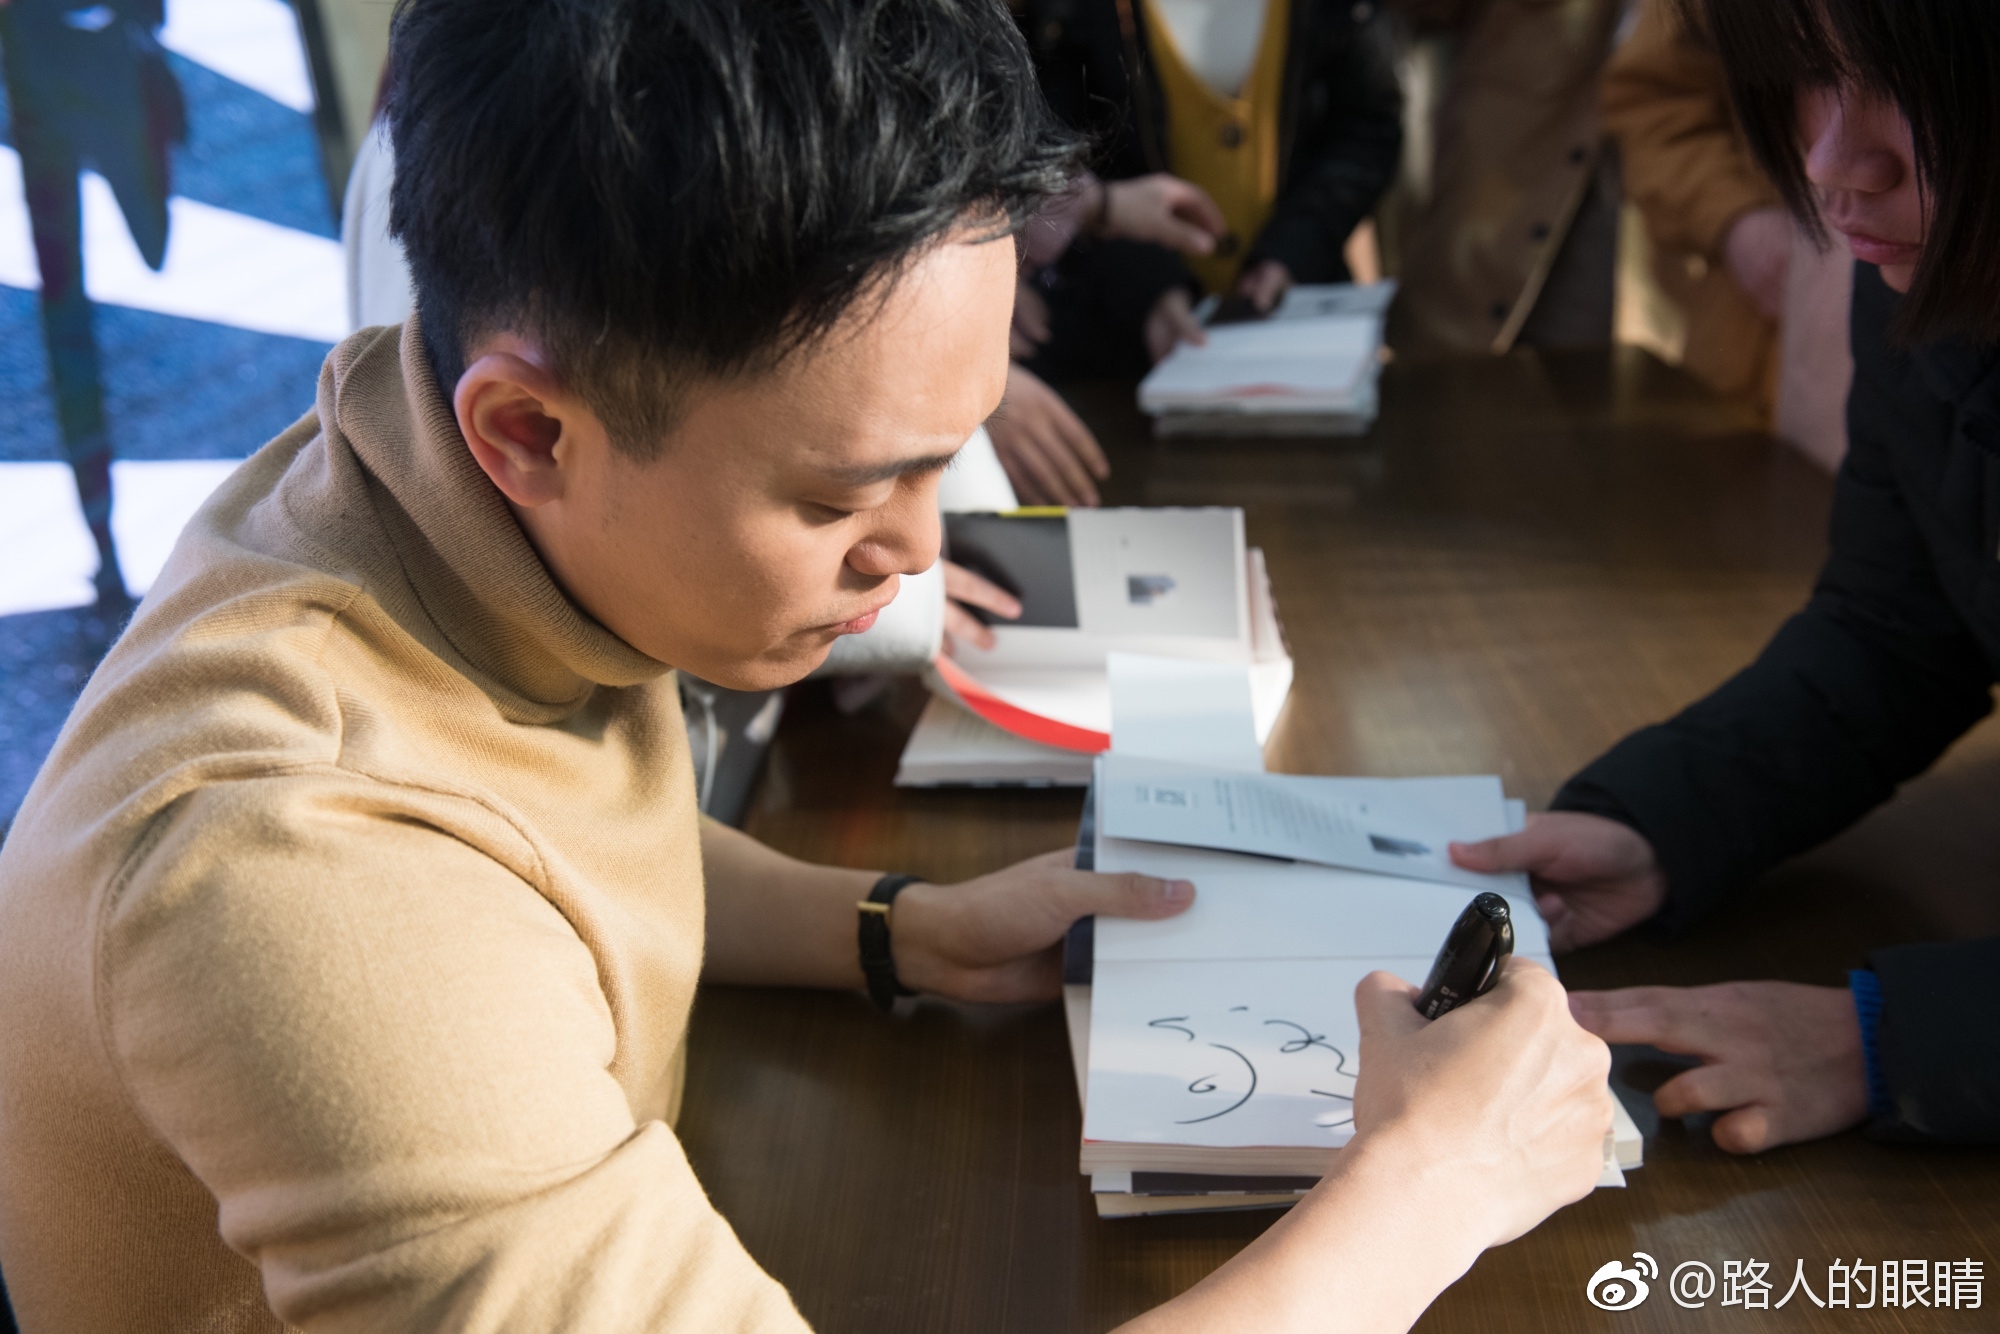 青年作家刘同将携新书亮相湘潭步步高广场弘道书店签售会